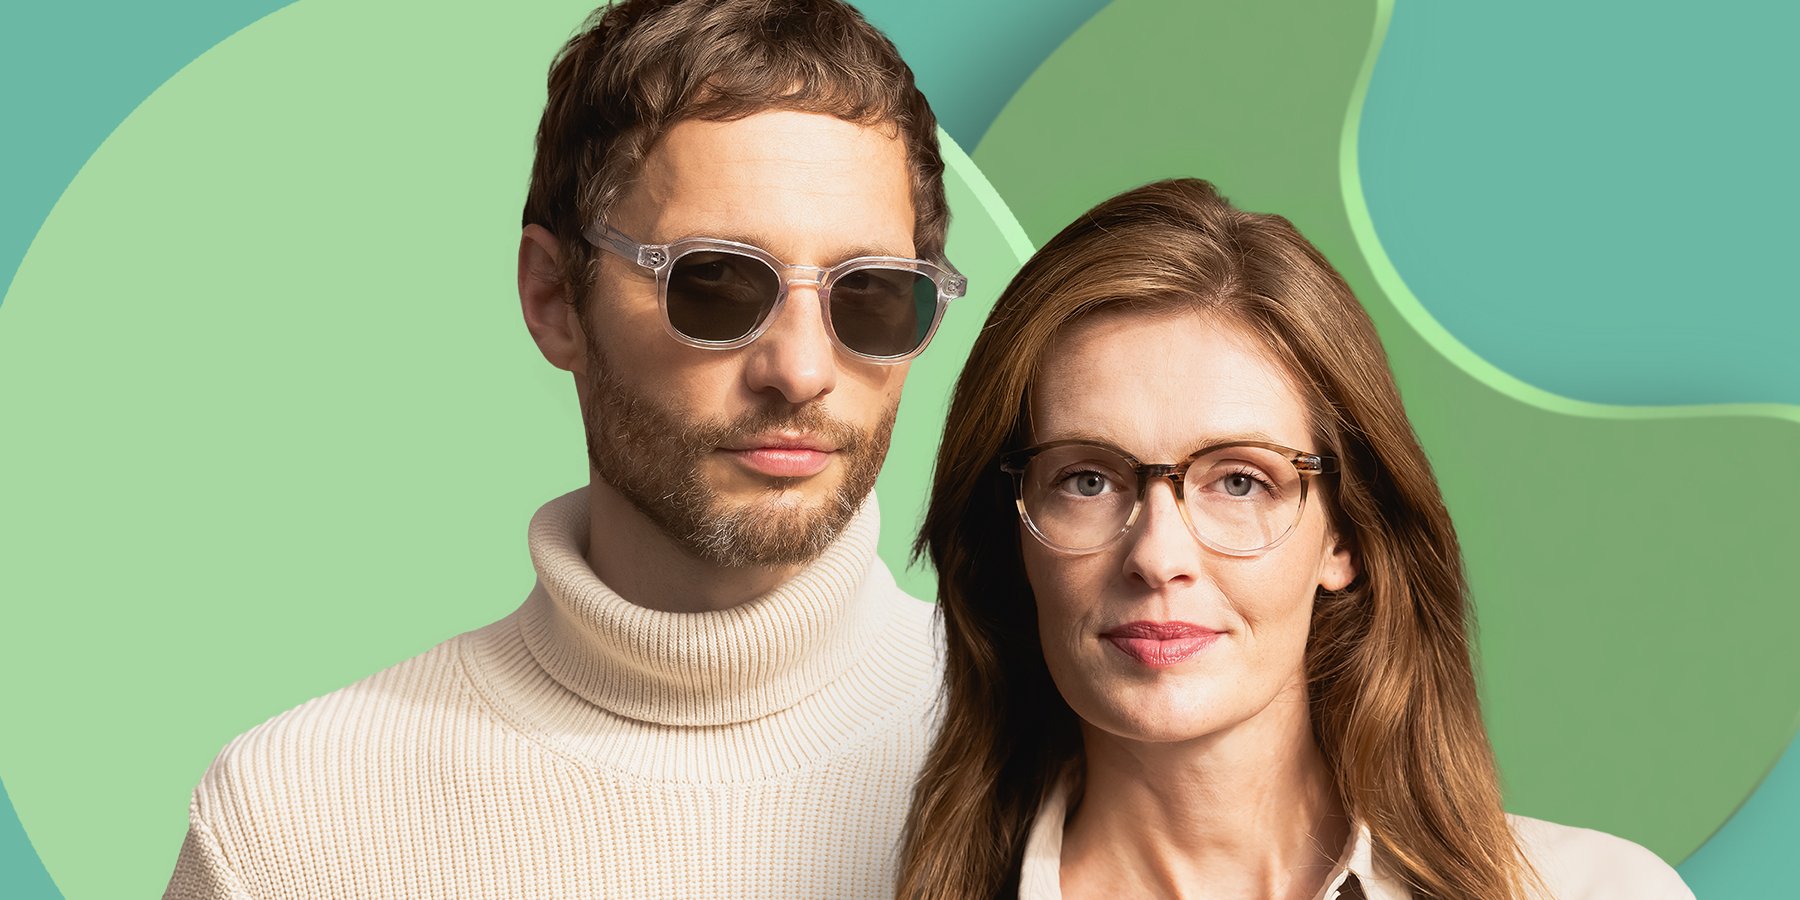 Zu sehen sind eine Frau mit Korrektionsbrille und ein Man mit Sonnenbrille vor einem grün changierenden Hintergrund